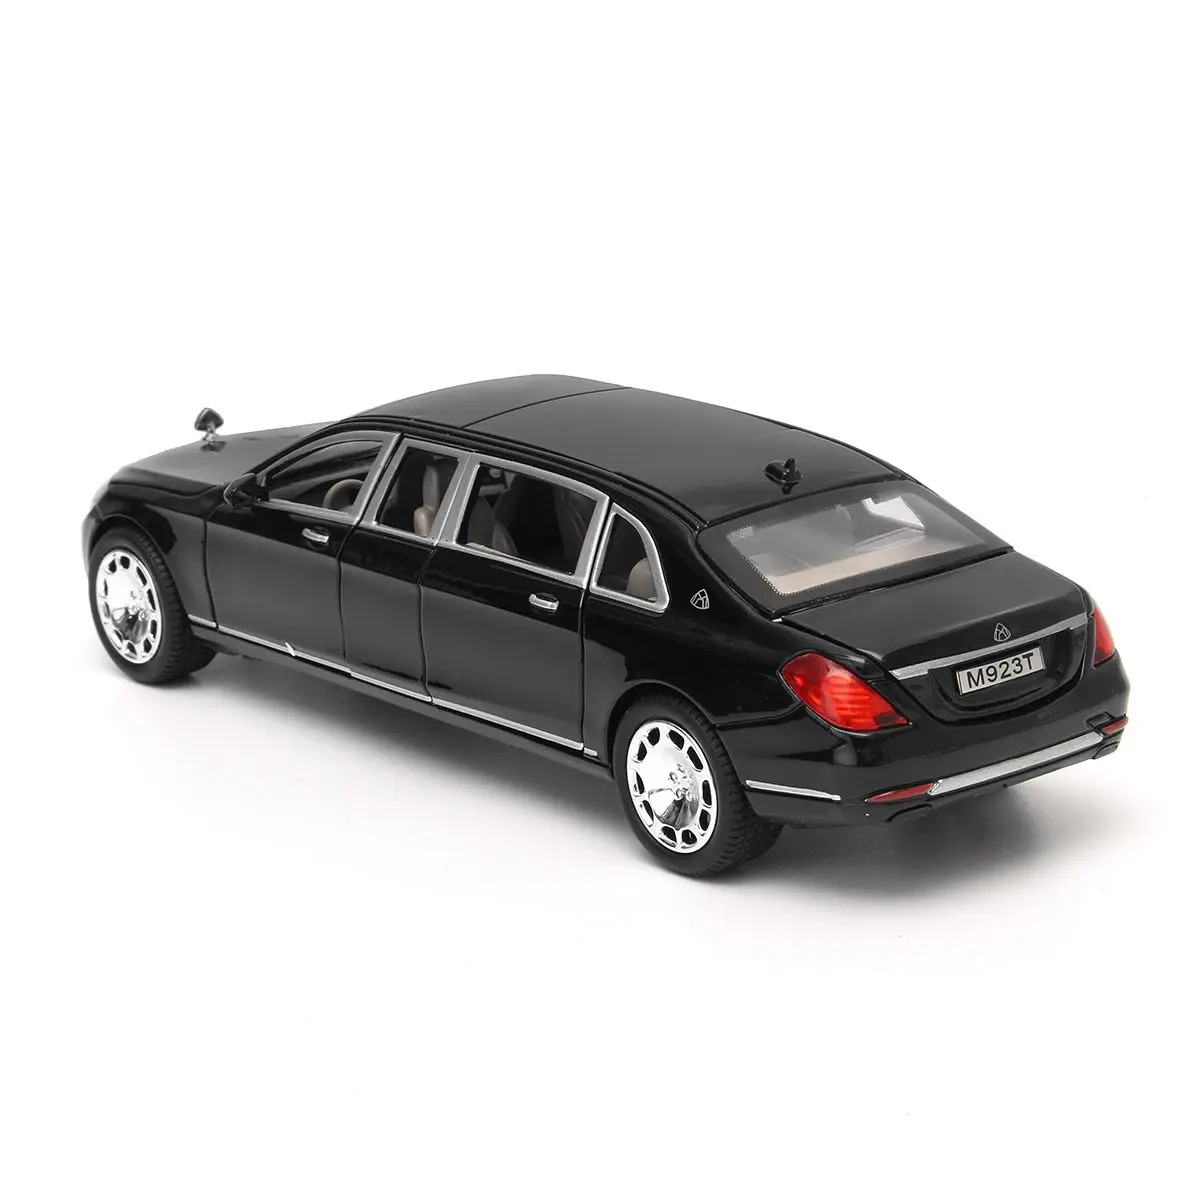 1:24 Игрушечная модель для Mercedes Maybach S600 Limousine литая металлическая модель автомобиля игрушка для детей Рождественский подарок игрушка автомобиль коллекция